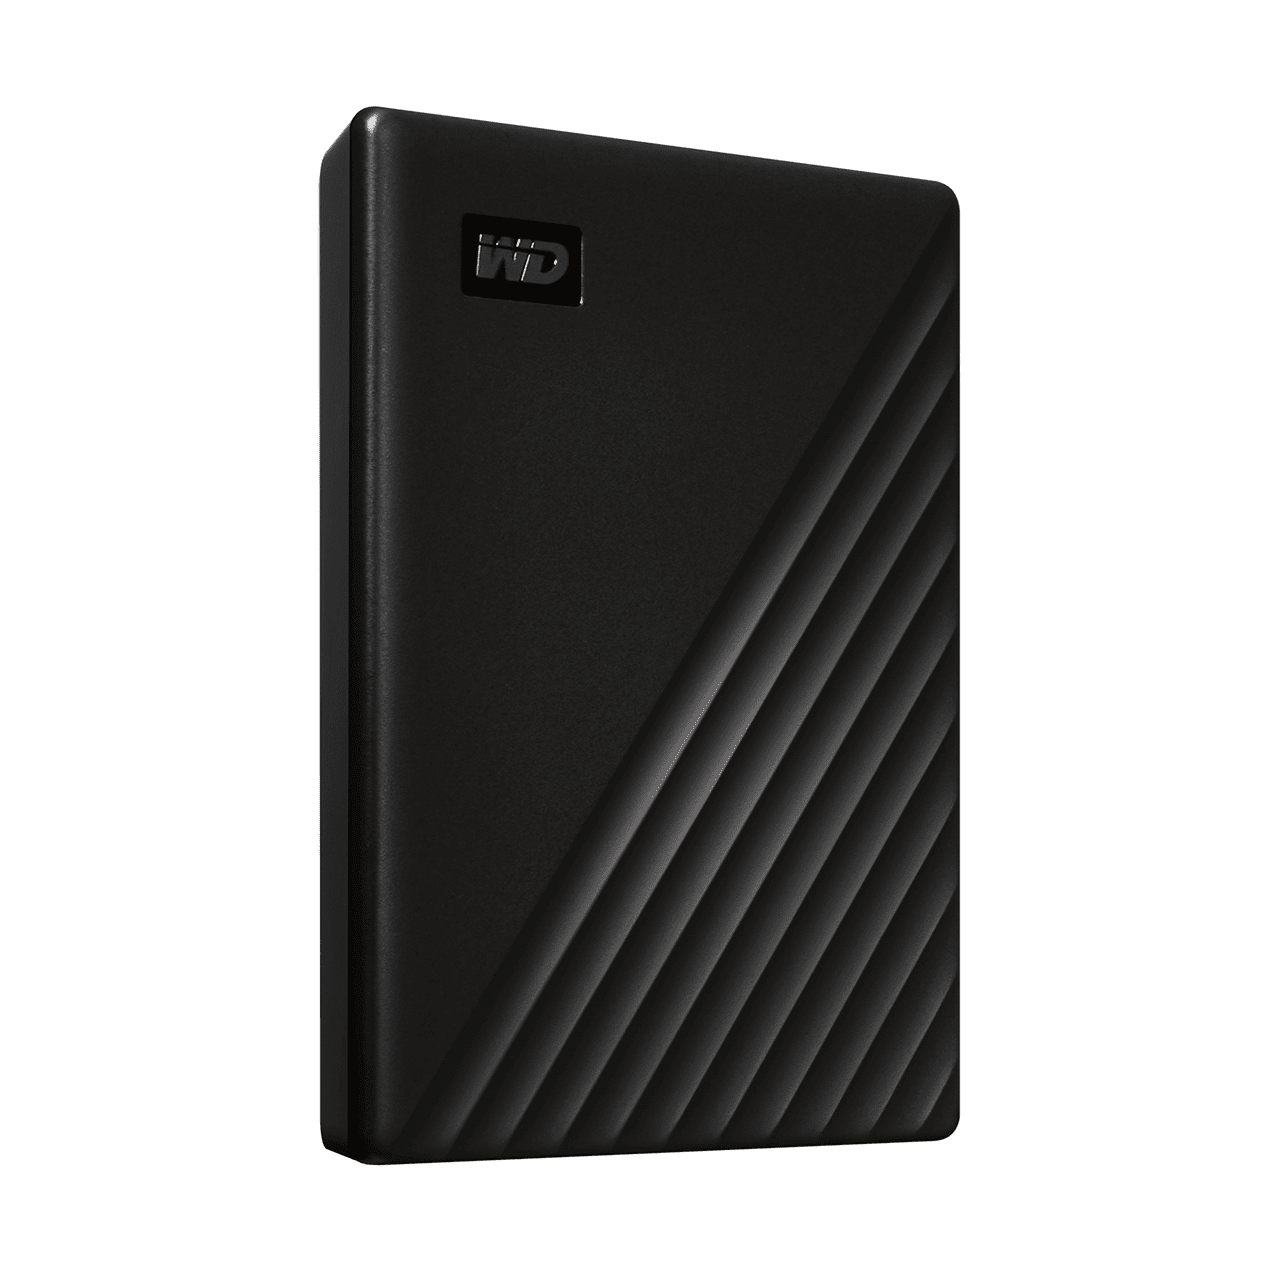 WD MyPassport 4Tb Portable USB 3.2 Hard Drive (Black)